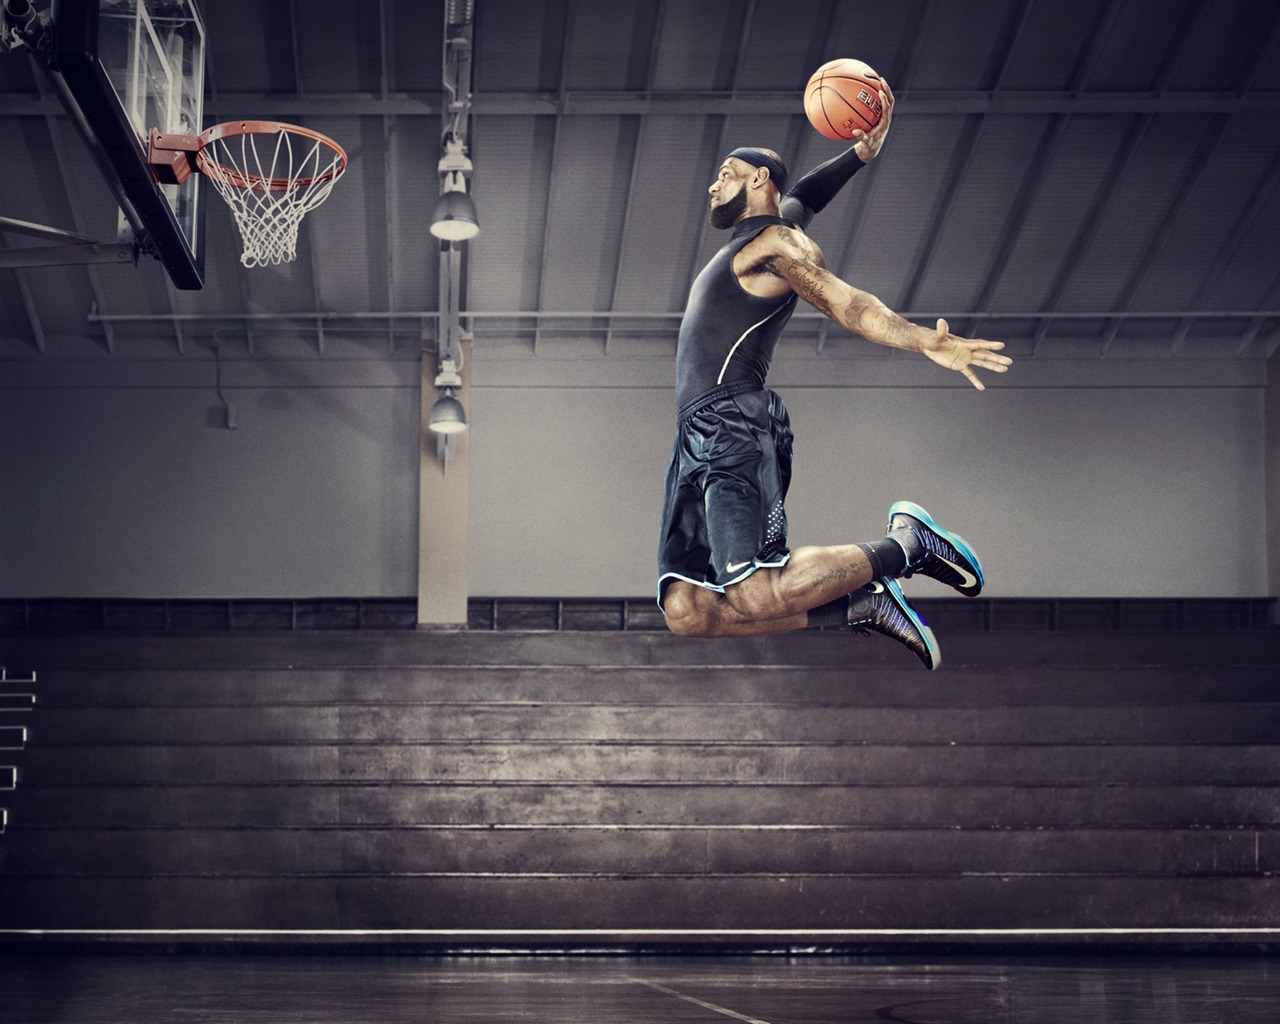 Nike Basketball for 1280 x 1024 resolution